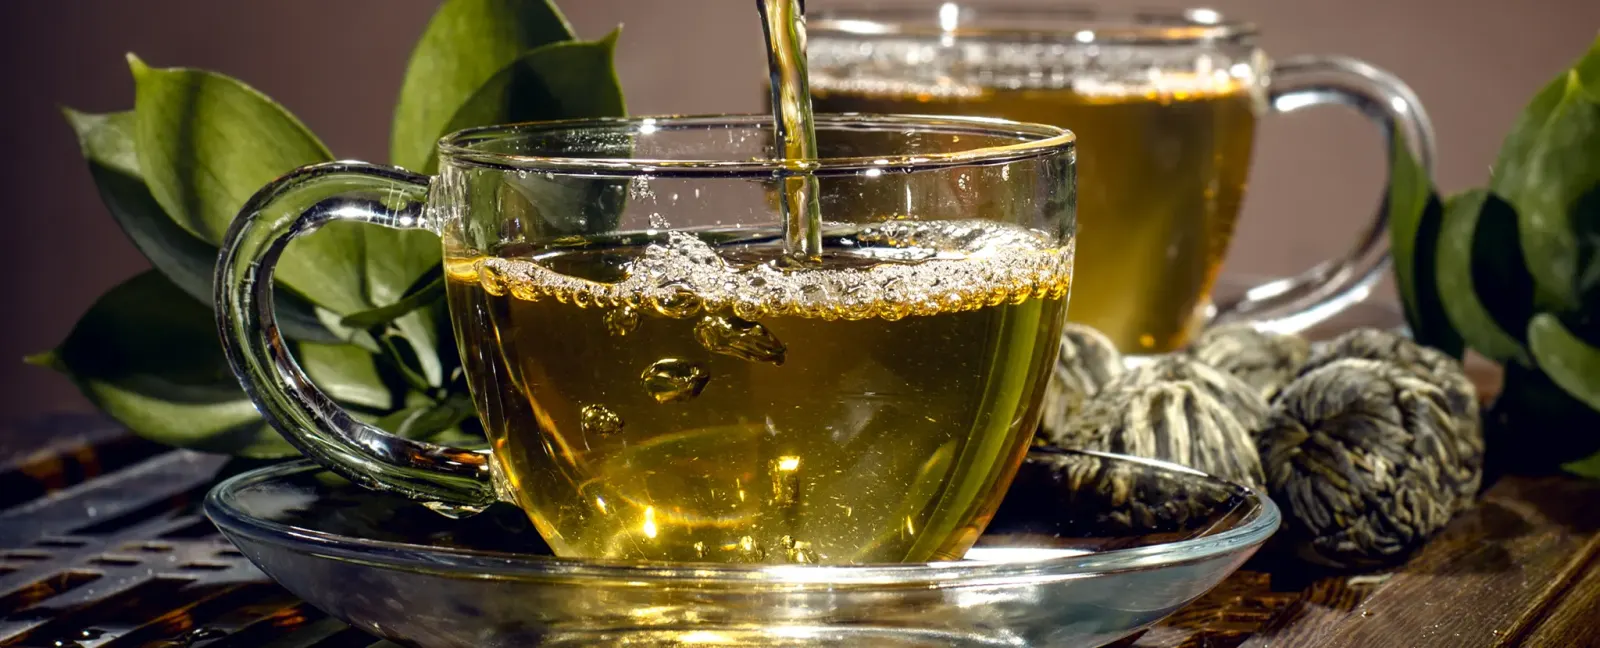 خواص چای سبز در تقویت قدرت بینایی چشم